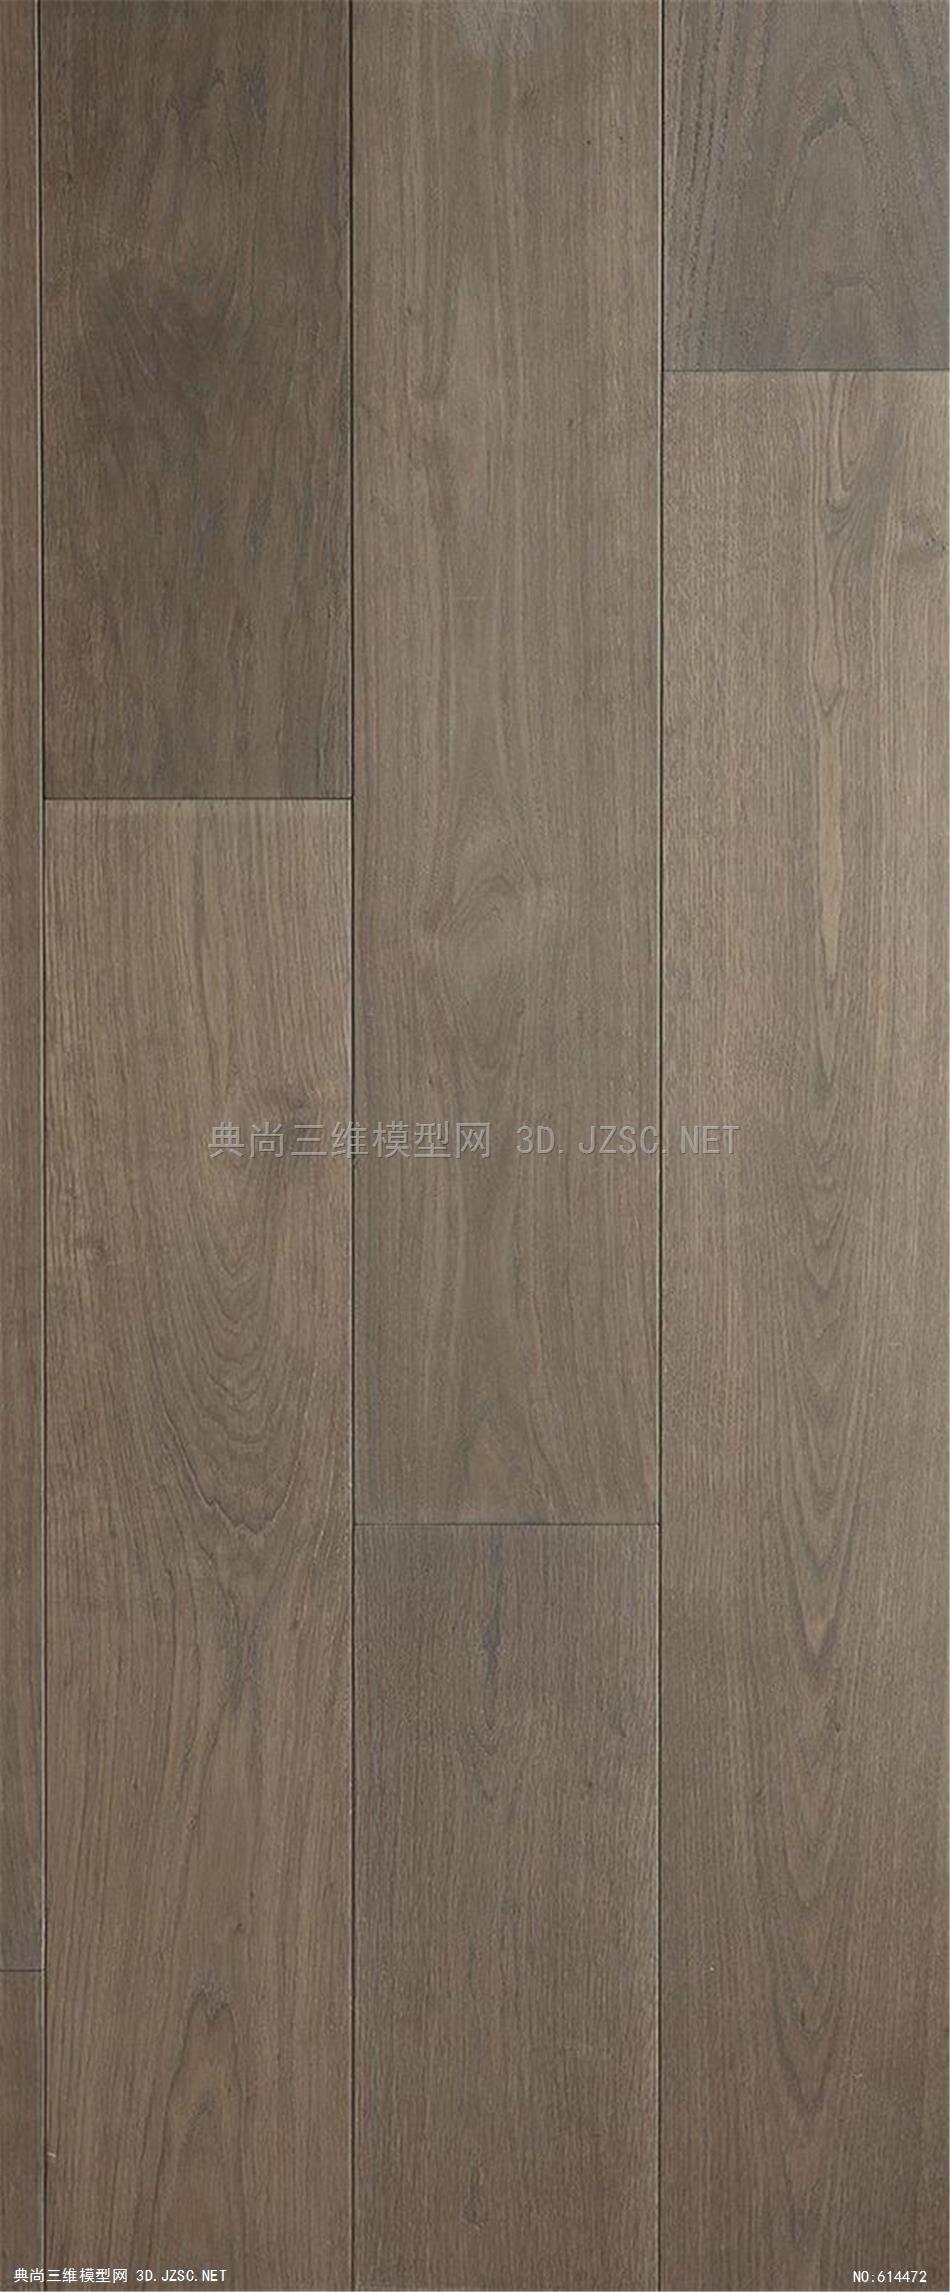 木饰面 木纹 木材  高清材质贴图 (316)